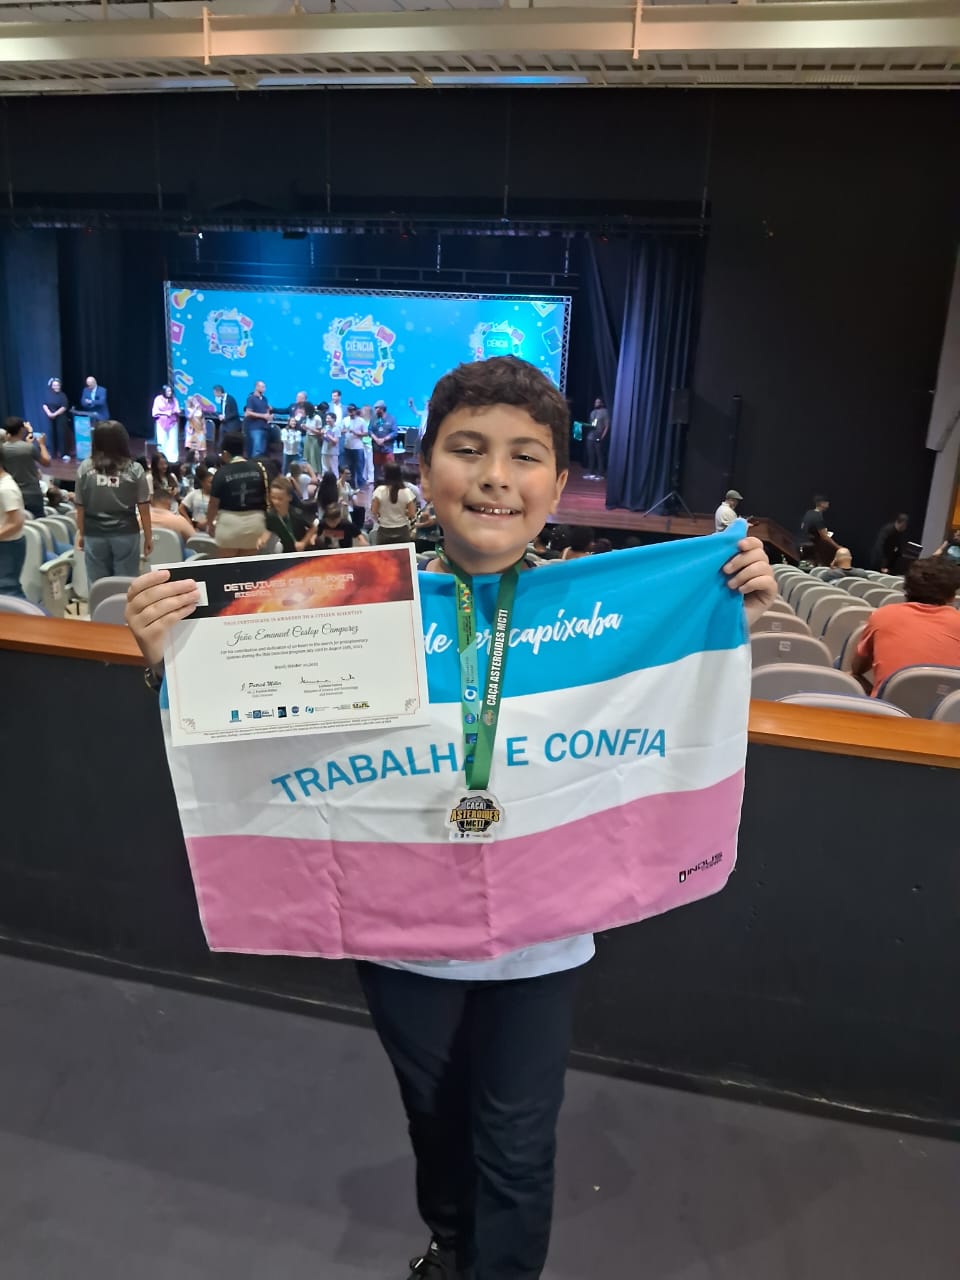 De apenas 10 anos, João Emanuel Coslop Camporez foi premiado em programa do governo federal realizado em parceria com a Nasa